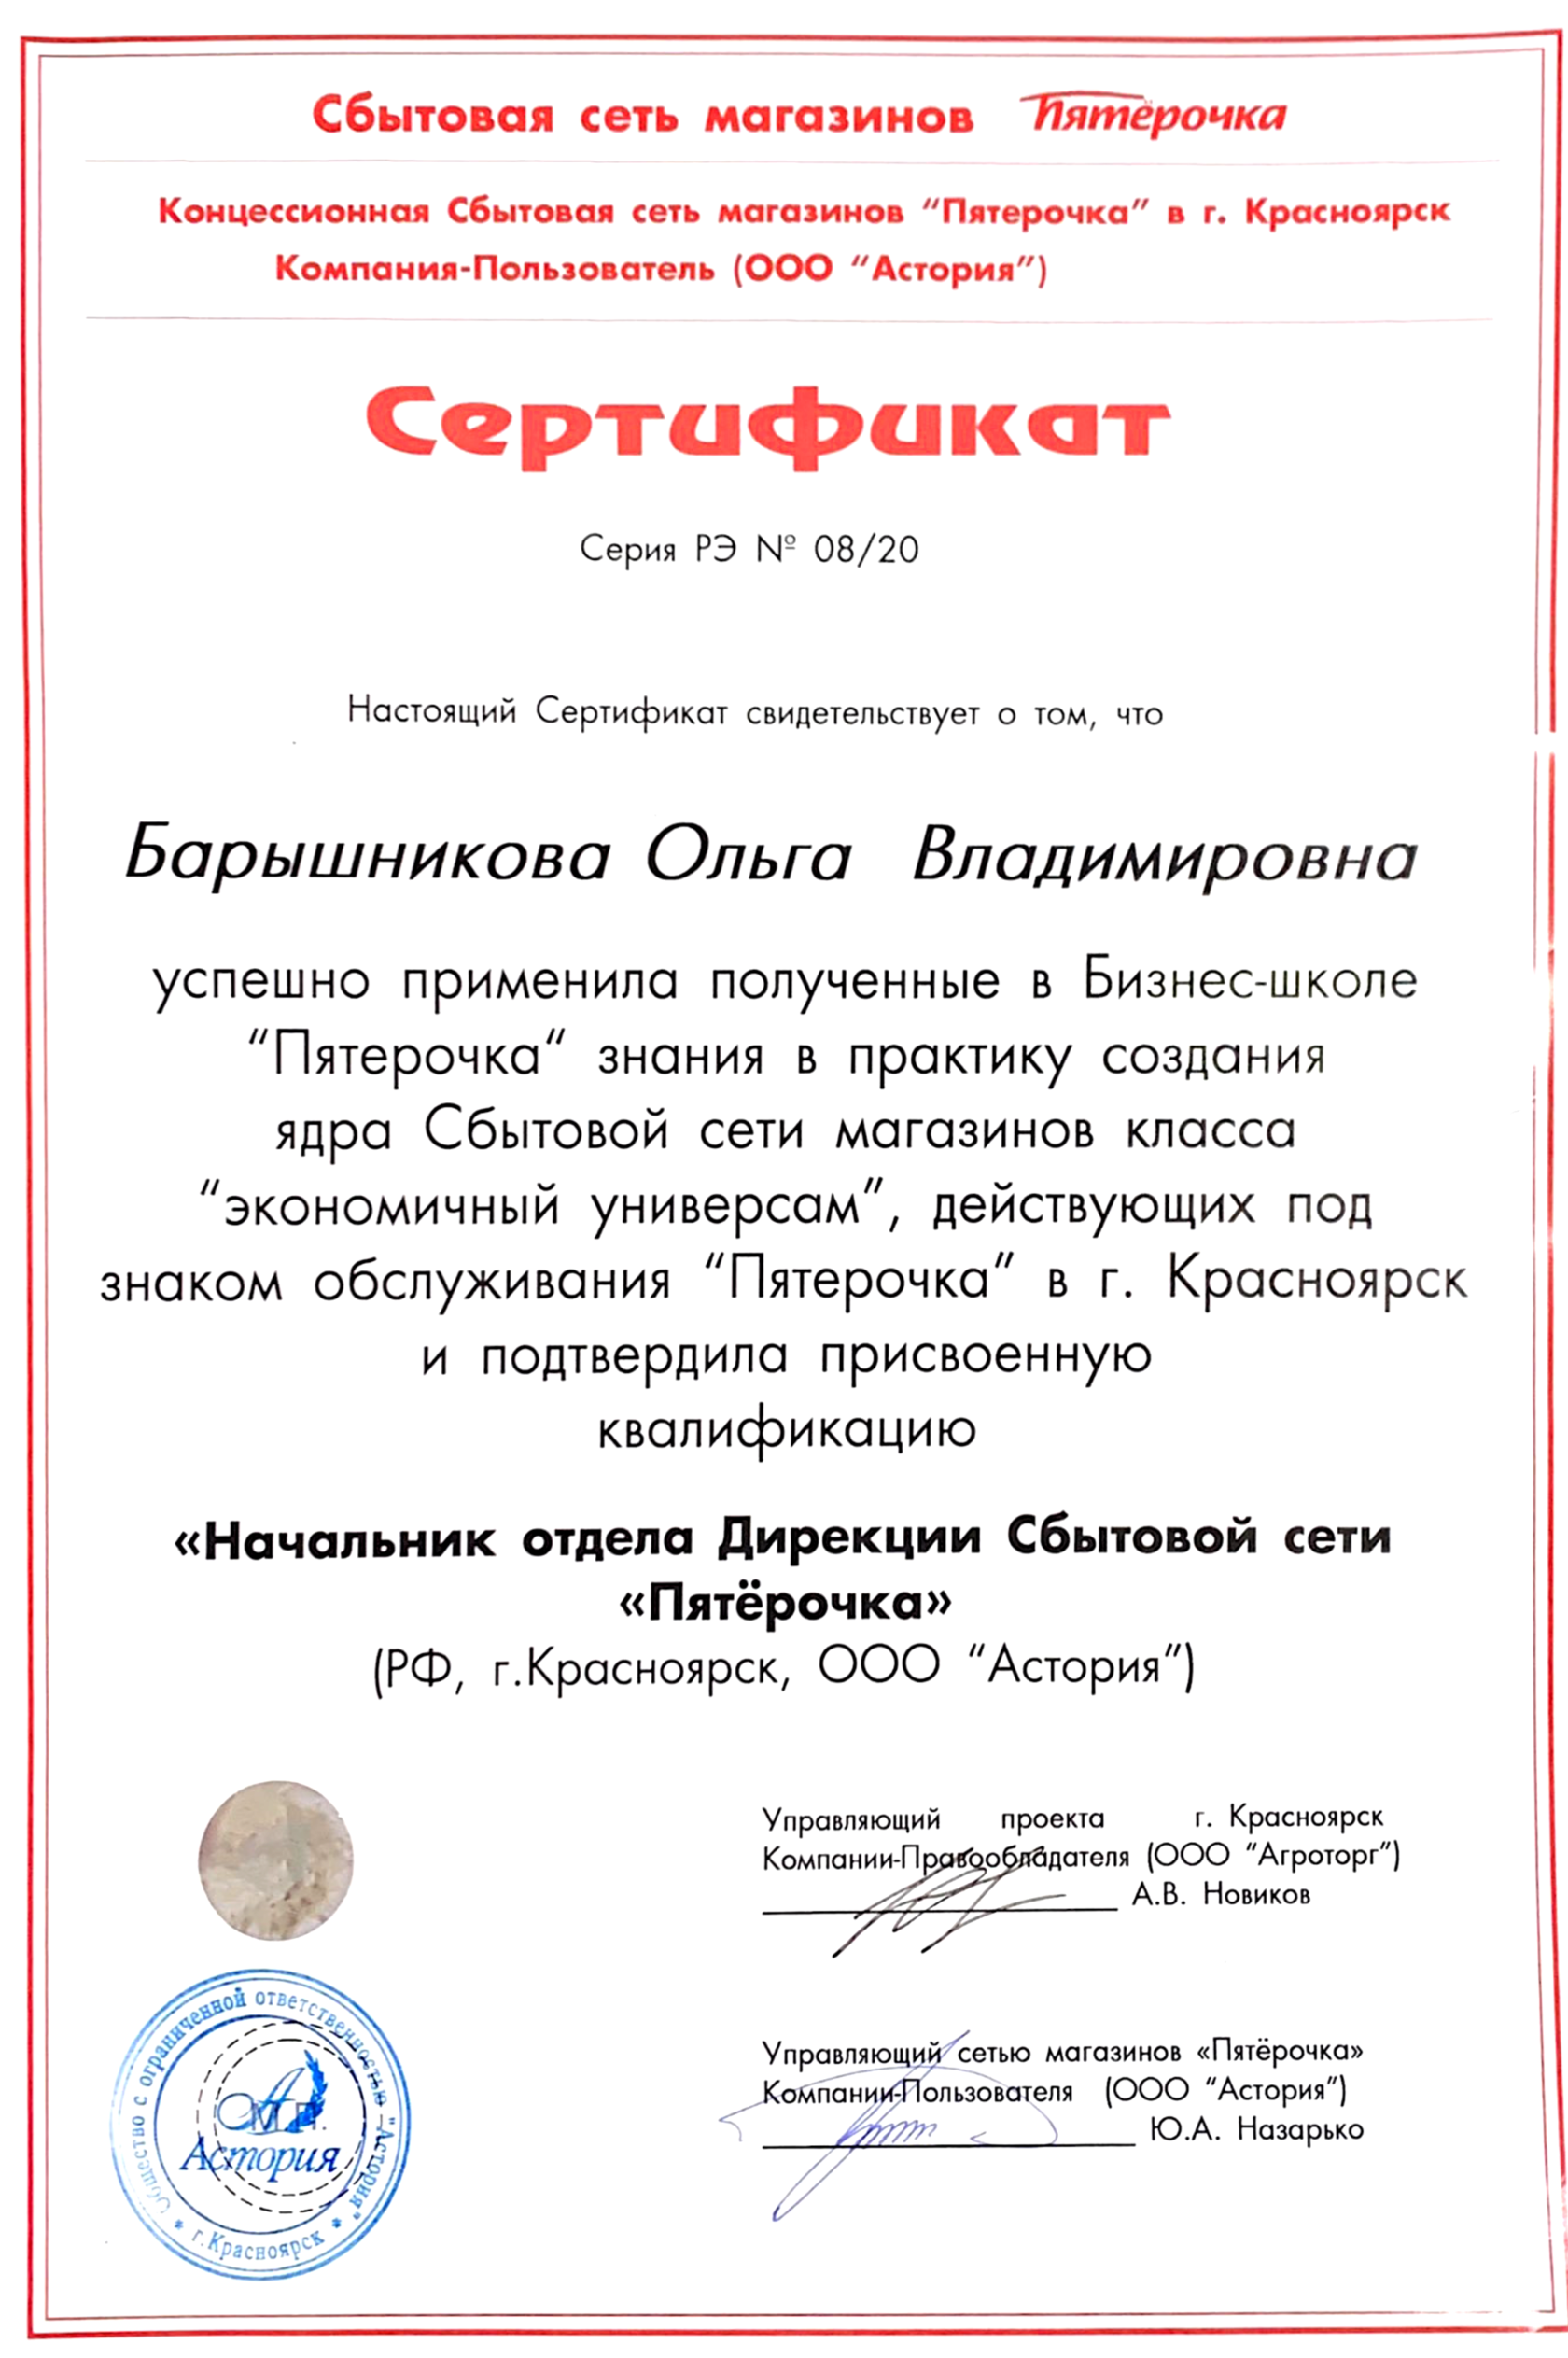 Сертификат бухгалтерского обслуживания